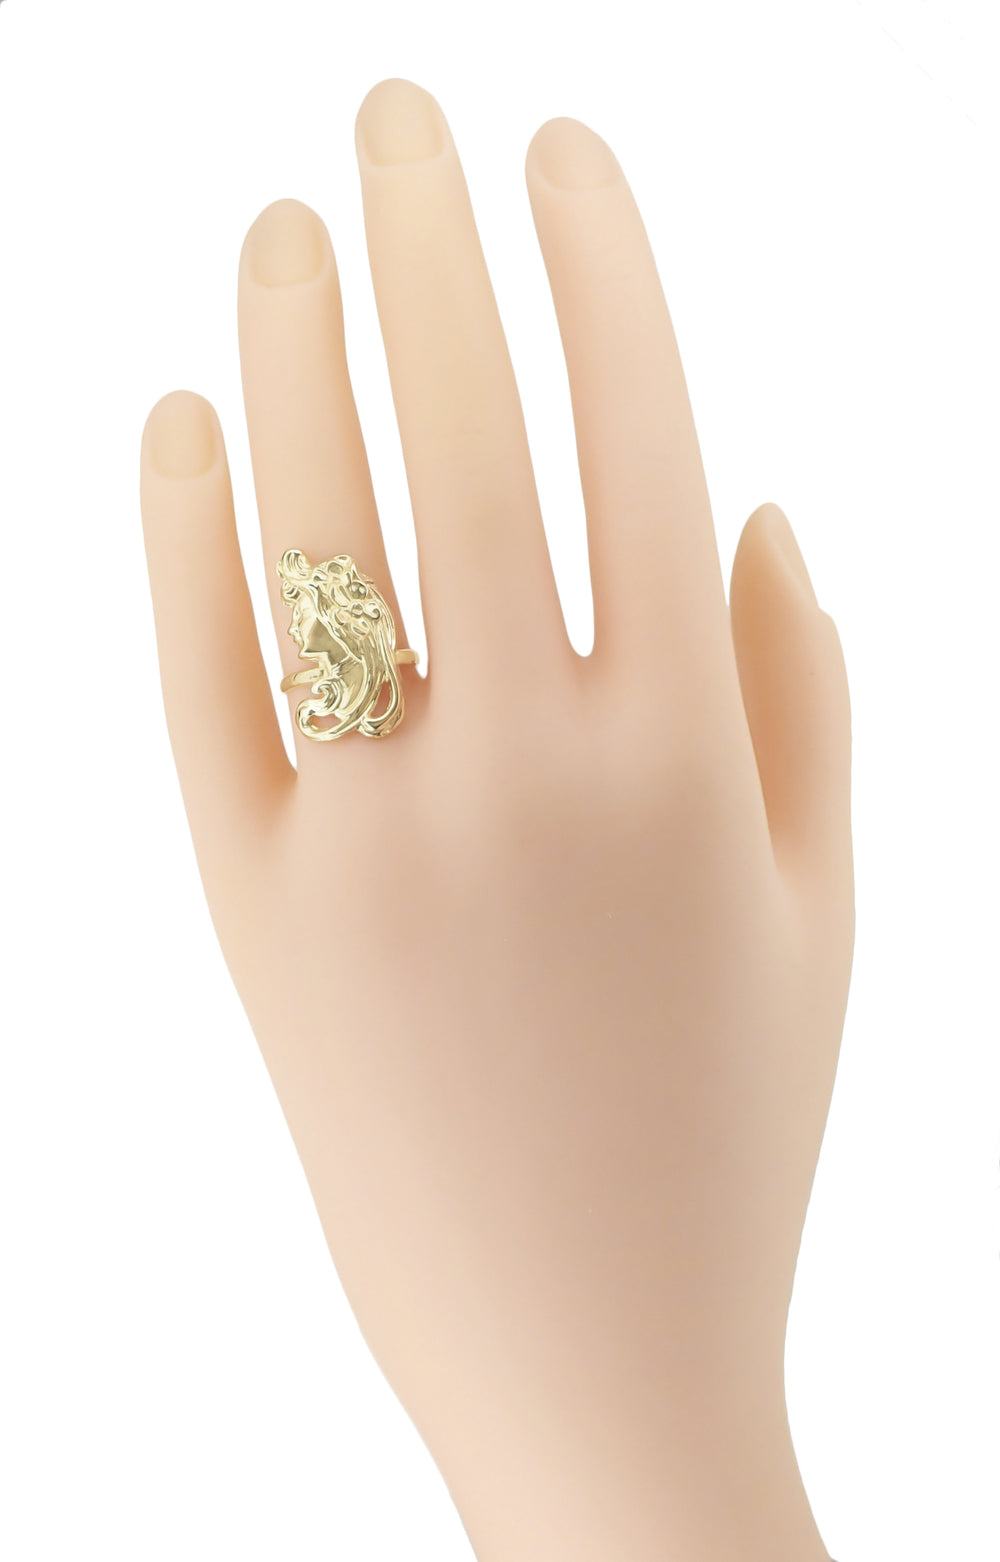 Art Nouveau Lady Ring in 14 Karat Yellow Gold - Item: R140 - Image: 2